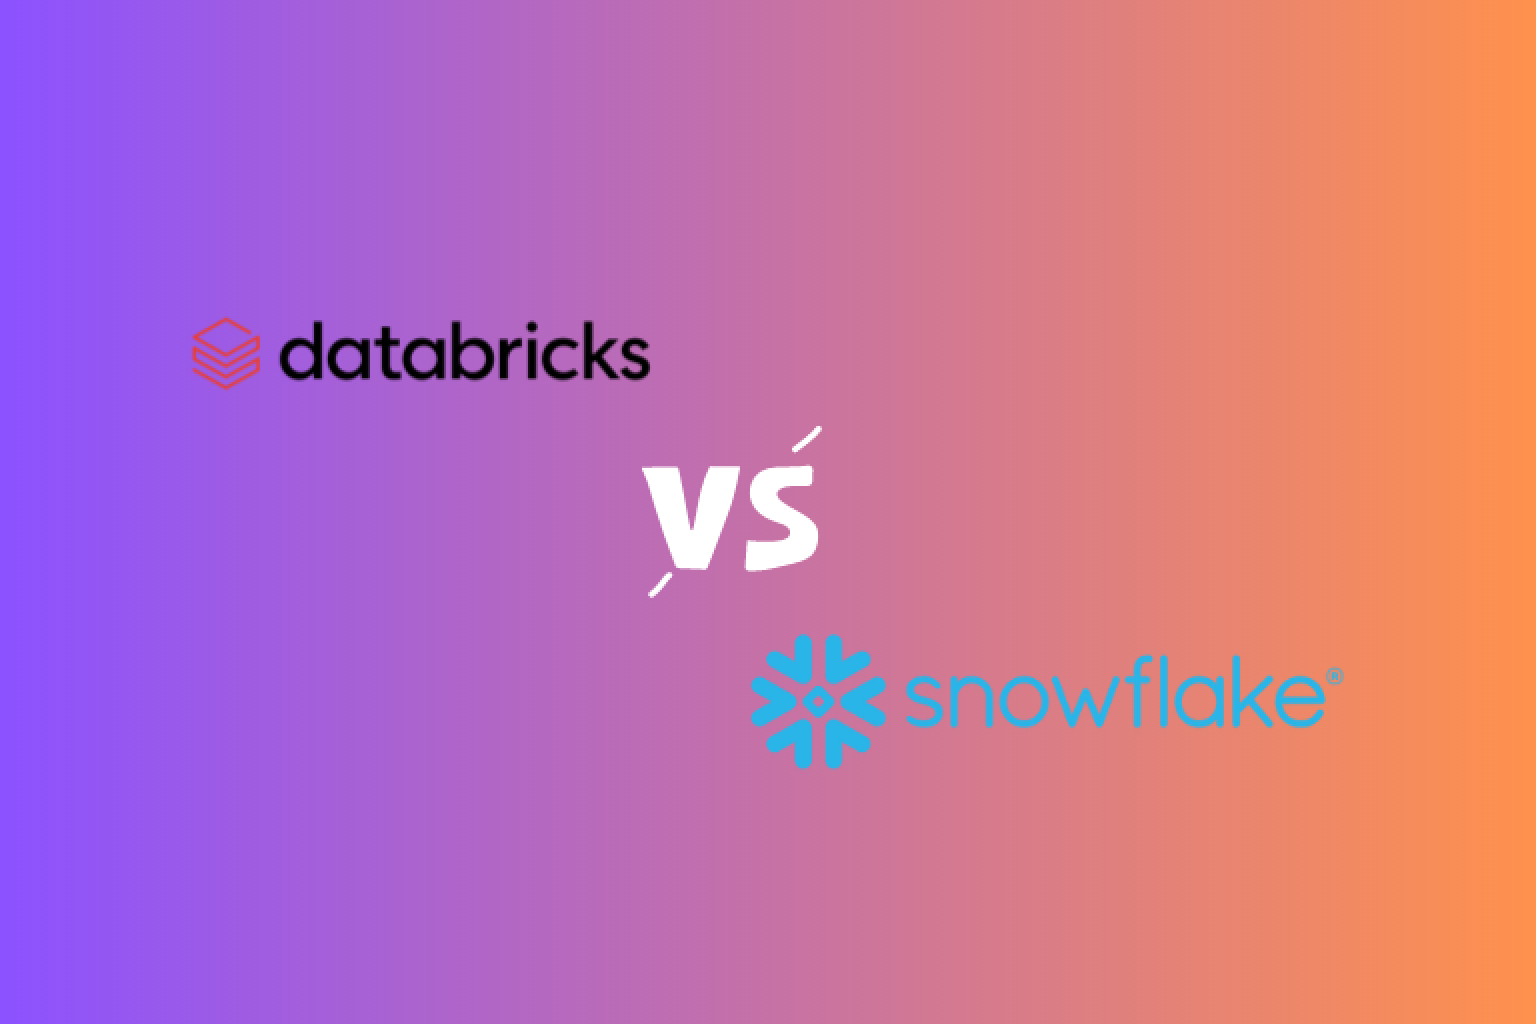 DatabricksとSnowflakeという2つの主要なデータプラットフォームの主な違いを探究します。メリット、デメリットを見て、自分に適した方を見つけましょう。